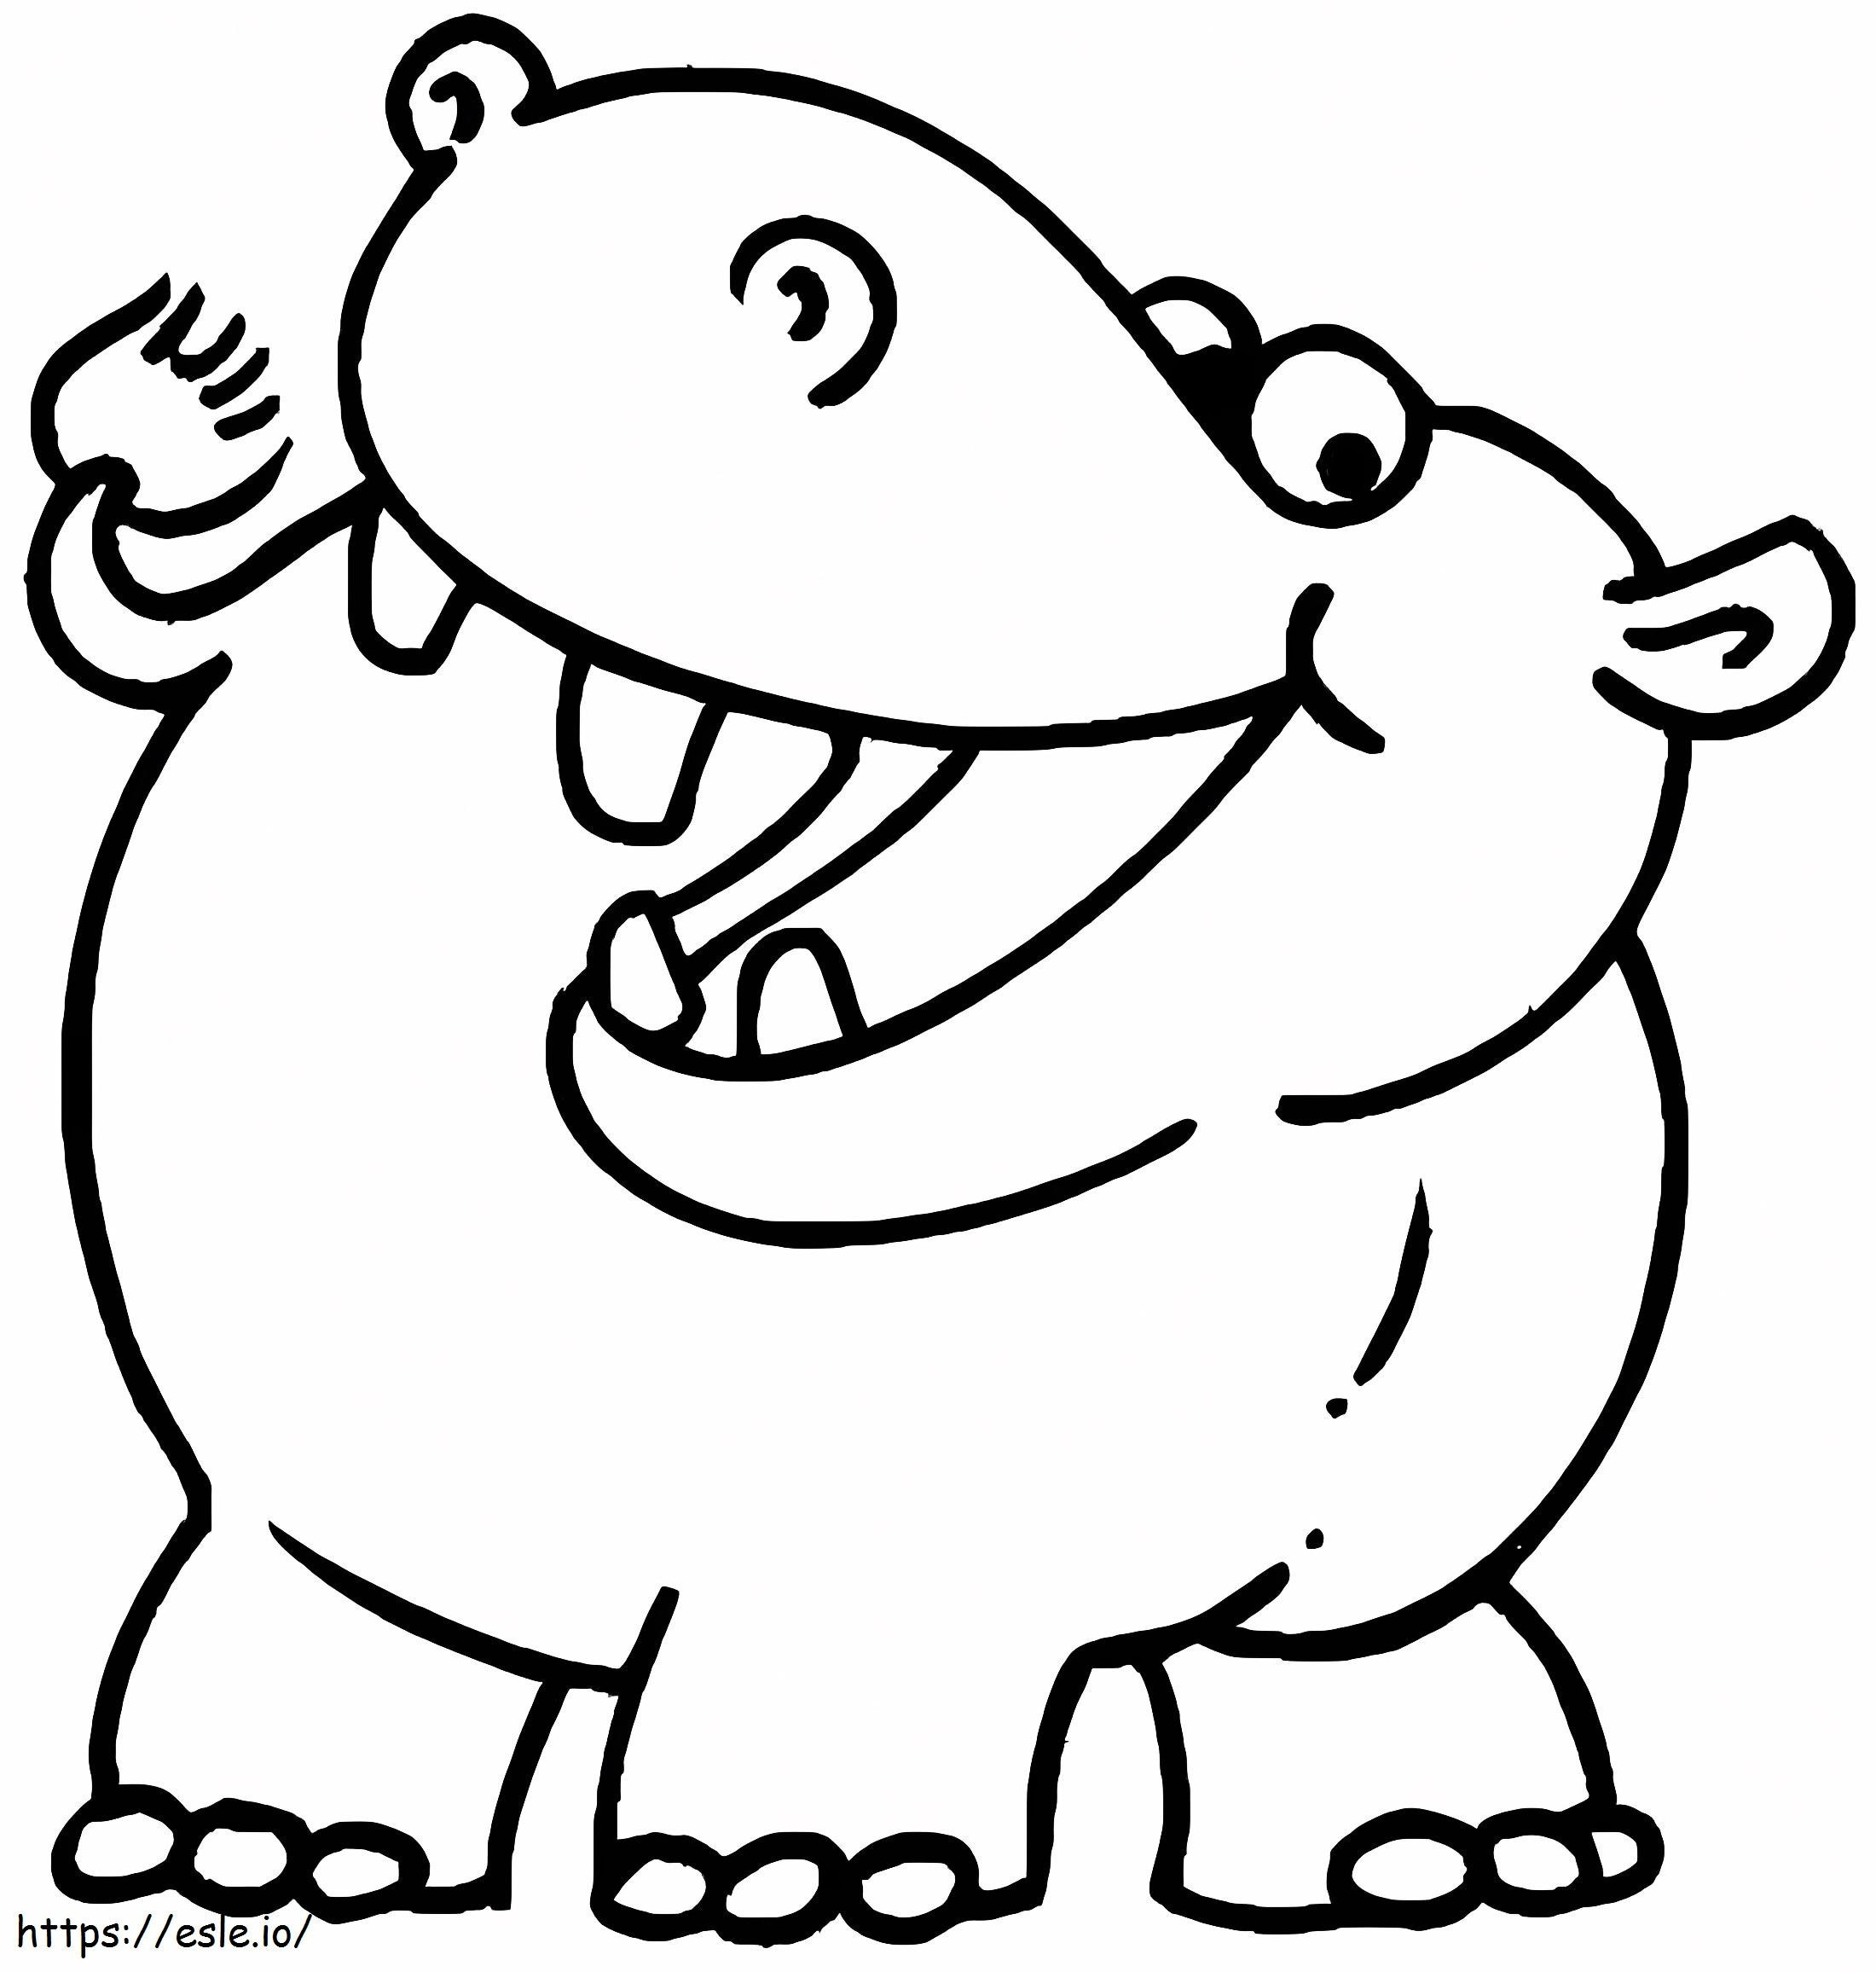 Dibujo divertido del hipopótamo para colorear